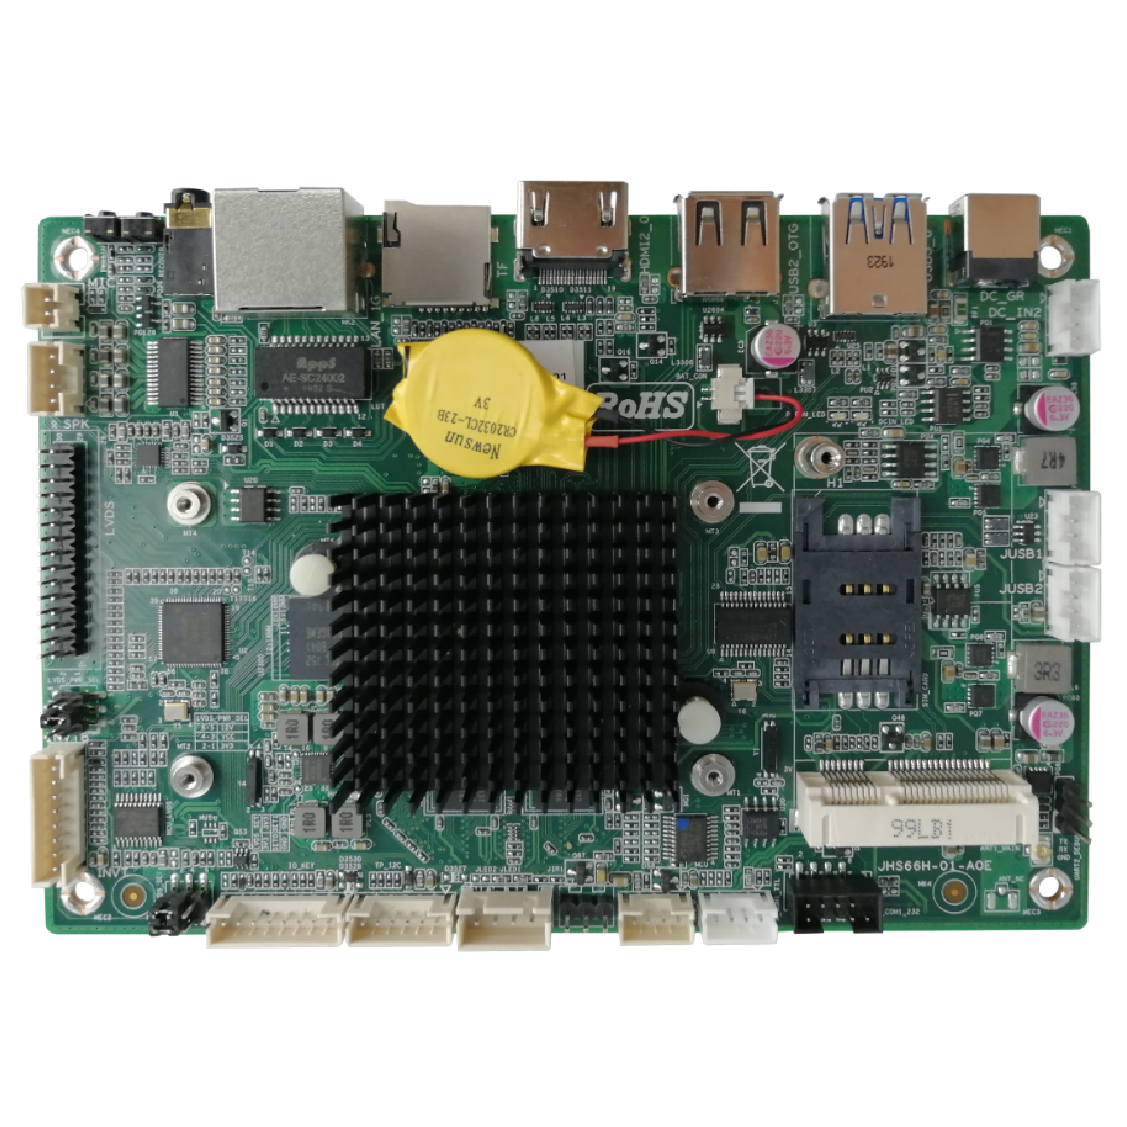 Giada IBC-381 RK3288 Quad-Core Cortex A53 ARM Industrial Motherboard w/ Mali GPU